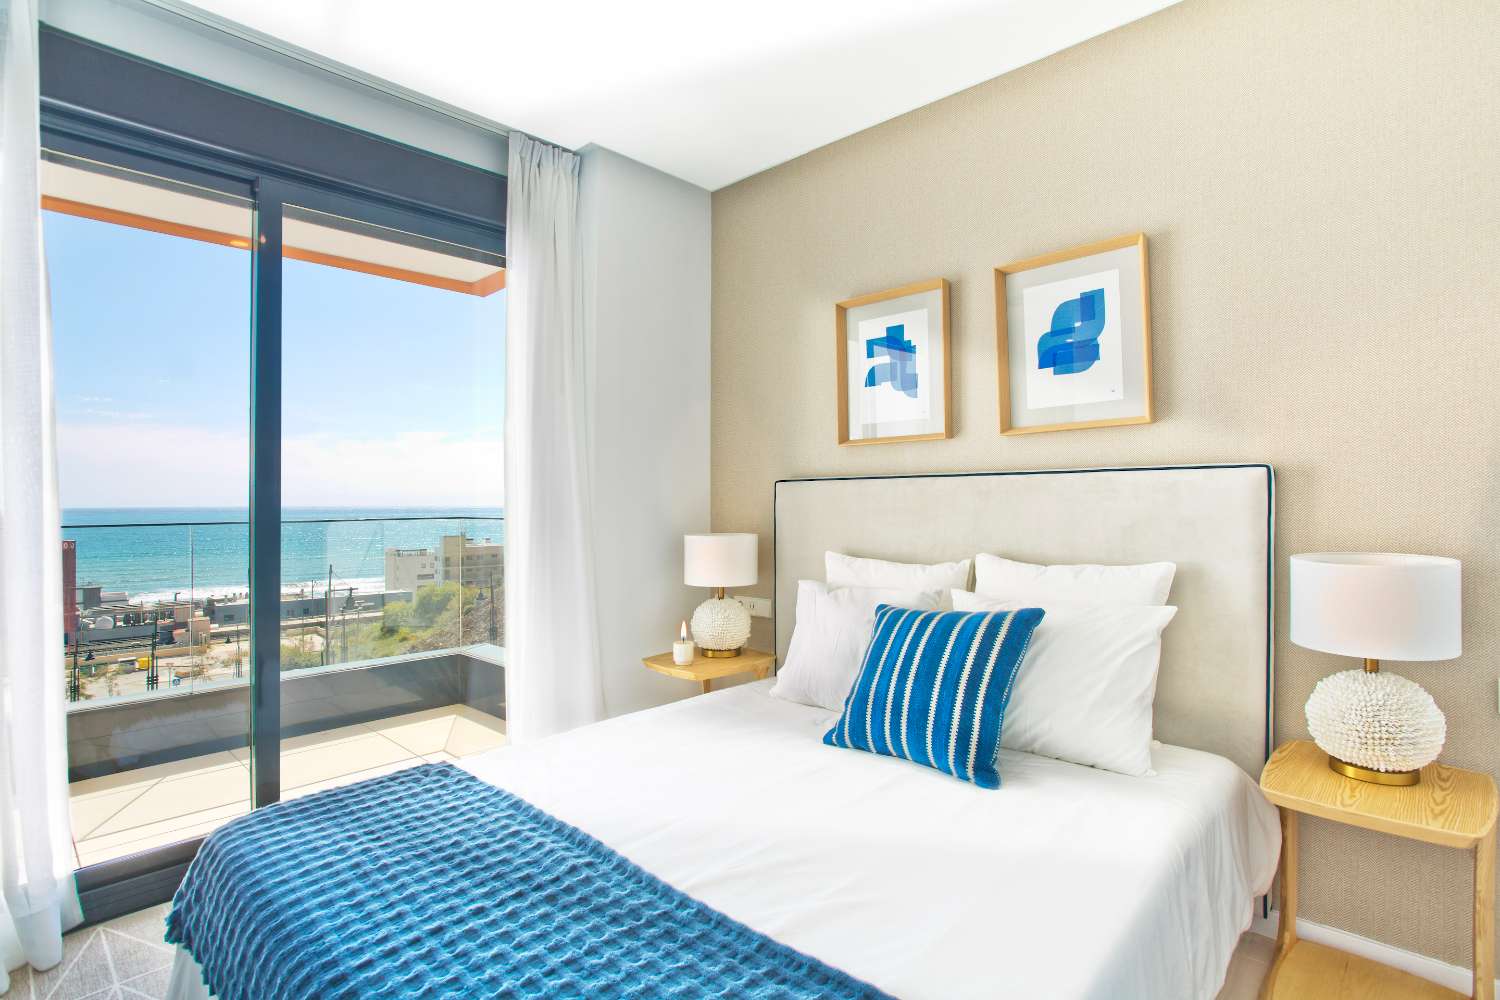 Spazioso appartamento con 3 camere da letto in una posizione privilegiata a pochi minuti dalla spiaggia con terrazza di 62 m2